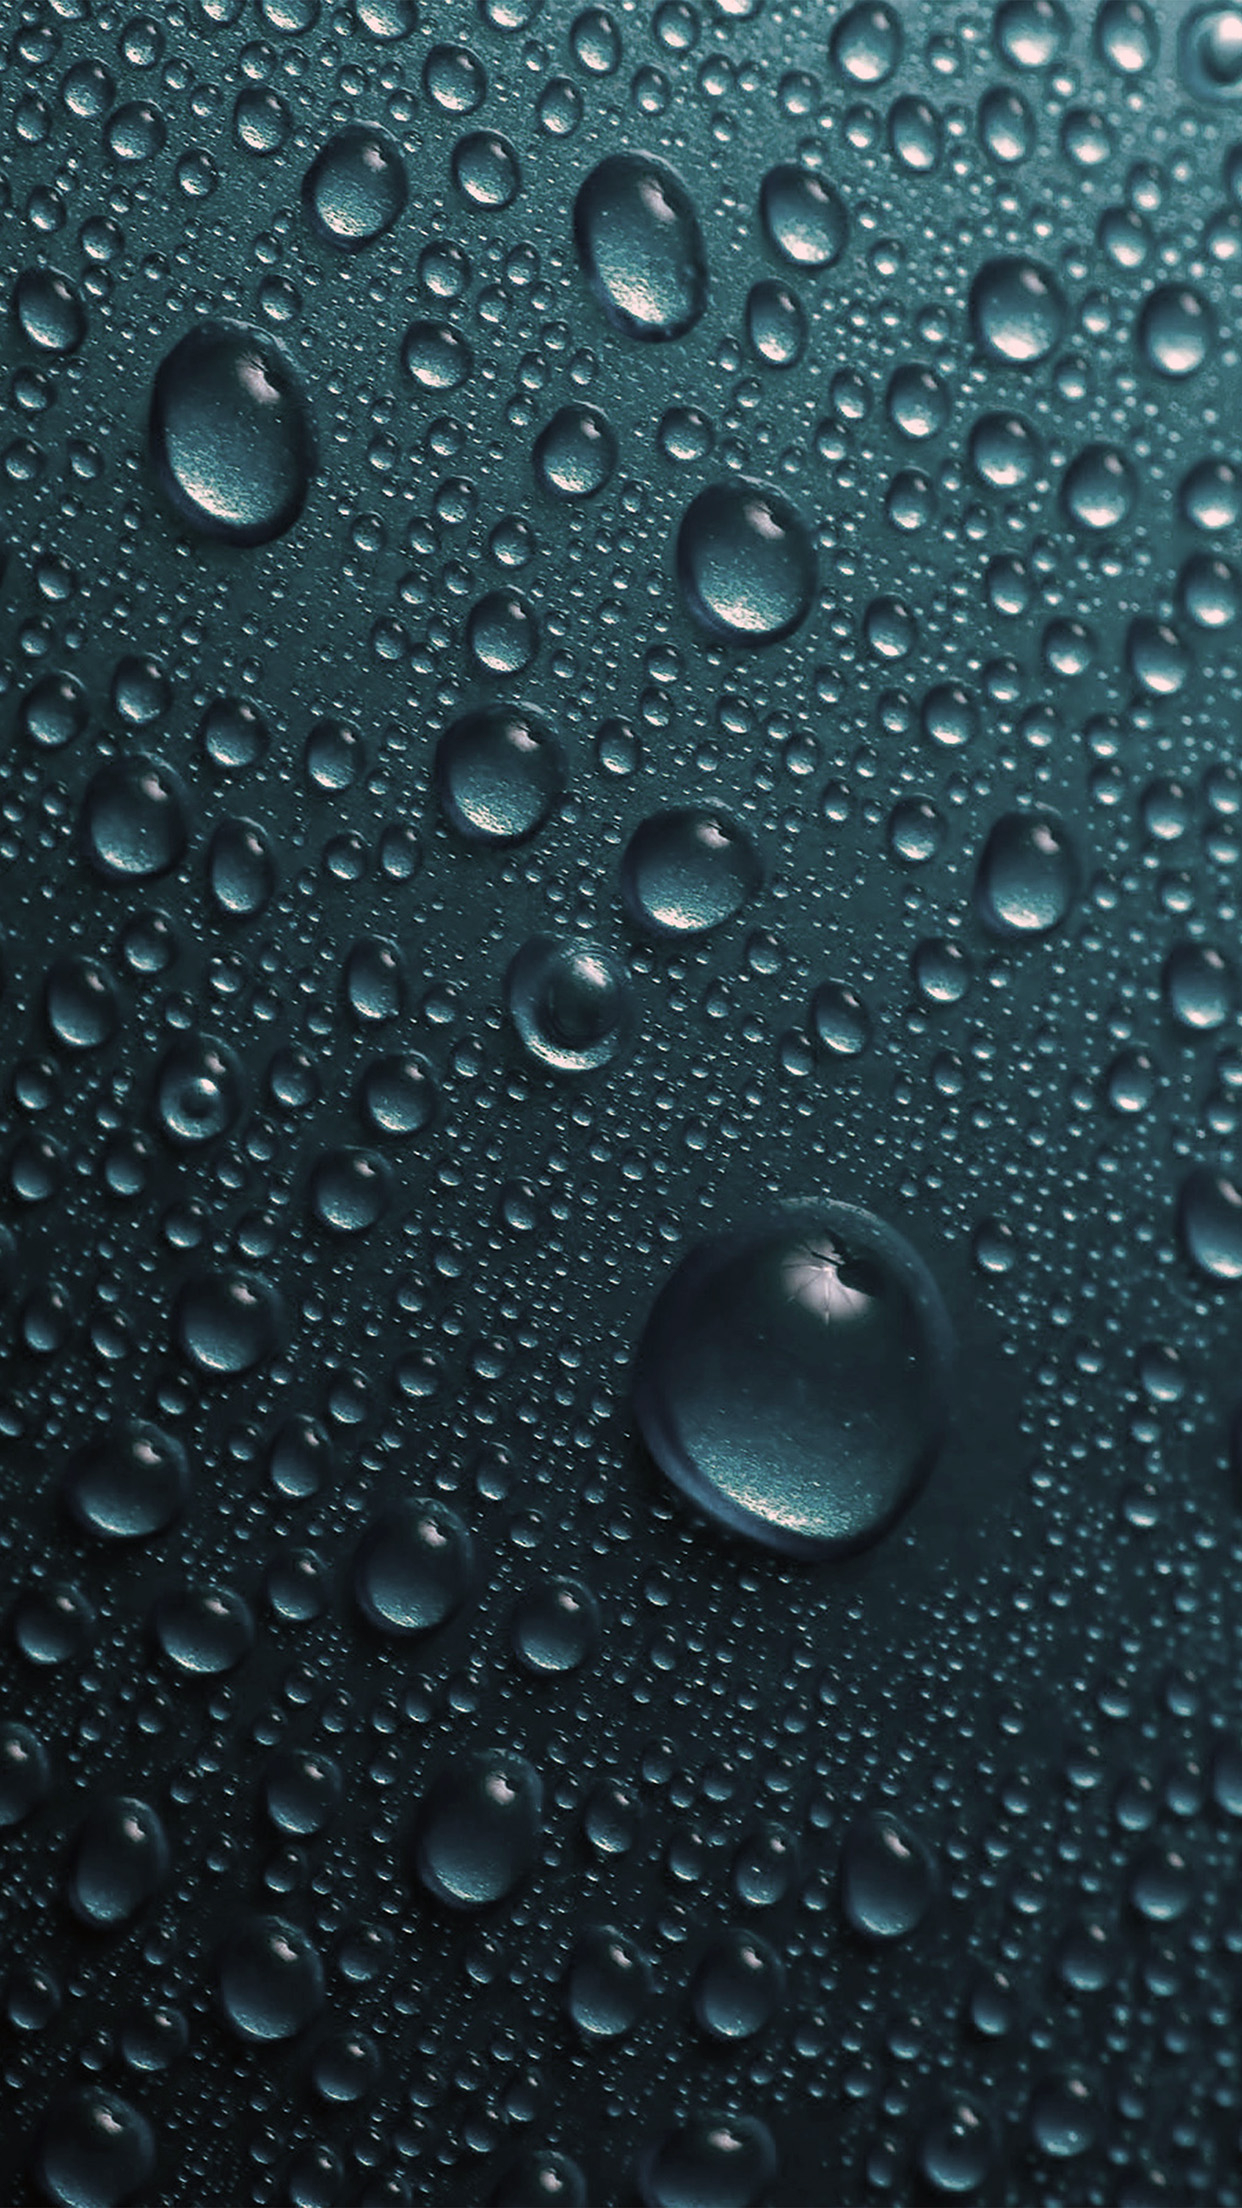 1242x2208 | iPhone 6 wallpaper | vr32-rain-dropblue-water-sad-pattern-dark